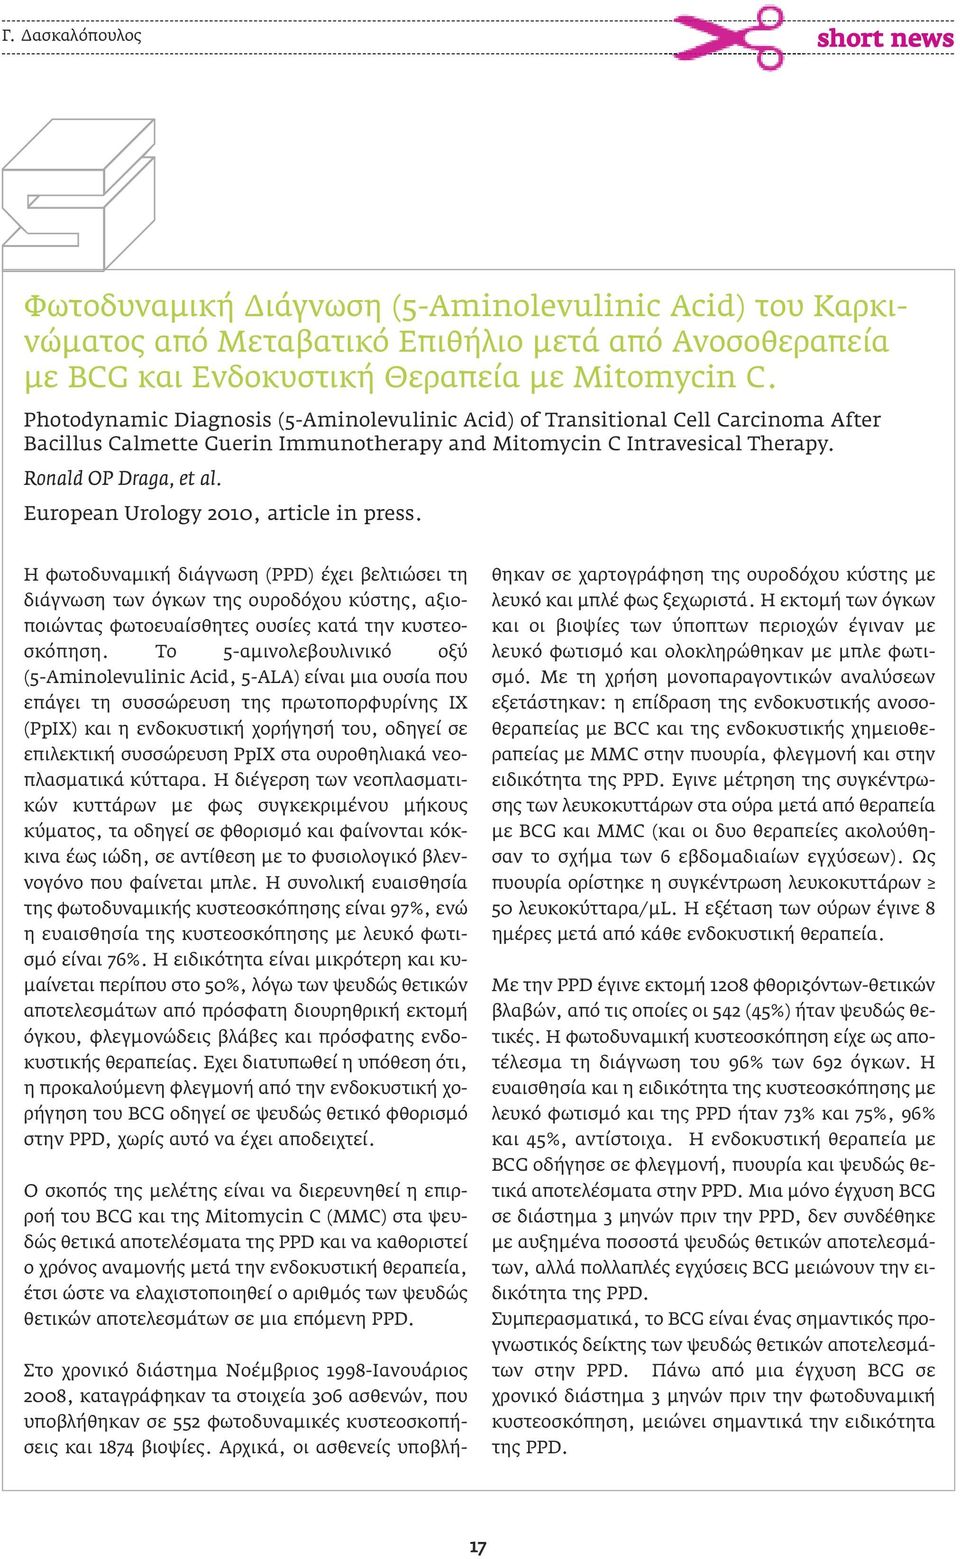 European Urology 2010, article in press. Η φωτοδυναµική διάγνωση (PPD) έχει βελτιώσει τη διάγνωση των όγκων της ουροδόχου κύστης, αξιοποιώντας φωτοευαίσθητες ουσίες κατά την κυστεοσκόπηση.